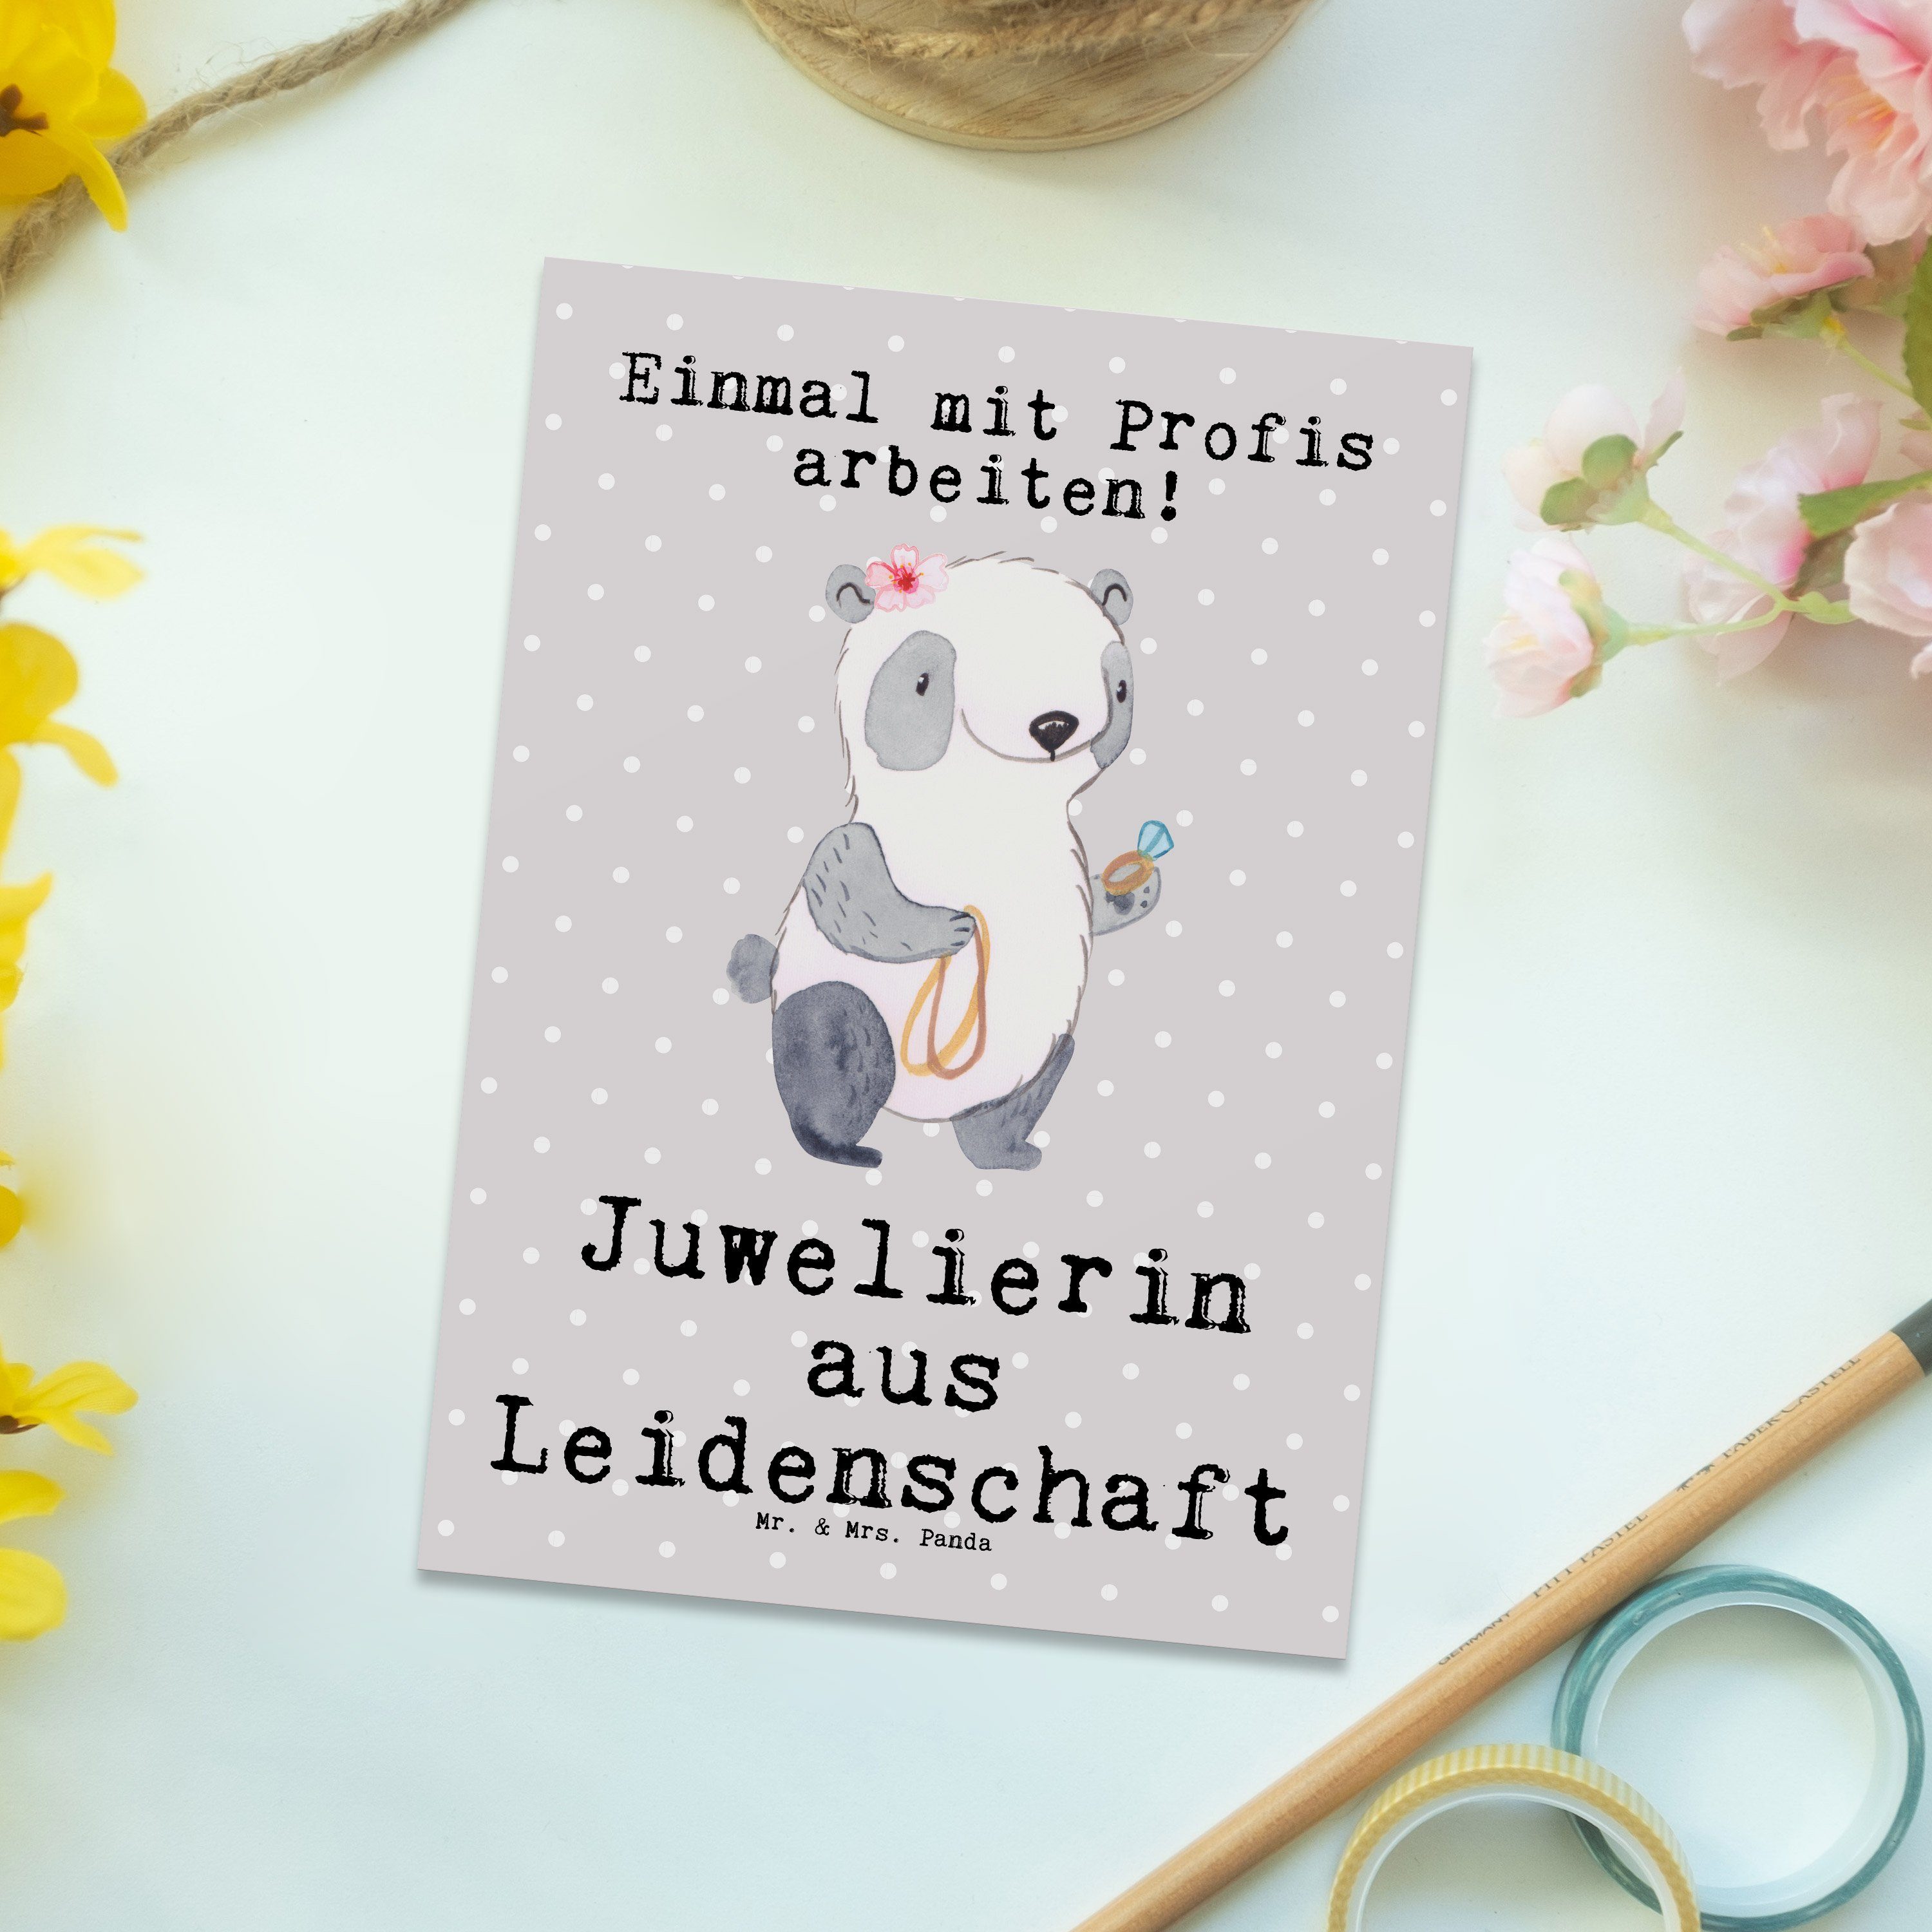 Grau Leidenschaft - Geschenk, shopping, Arbe Panda aus Postkarte Juwelierin & Mr. - Pastell Mrs.